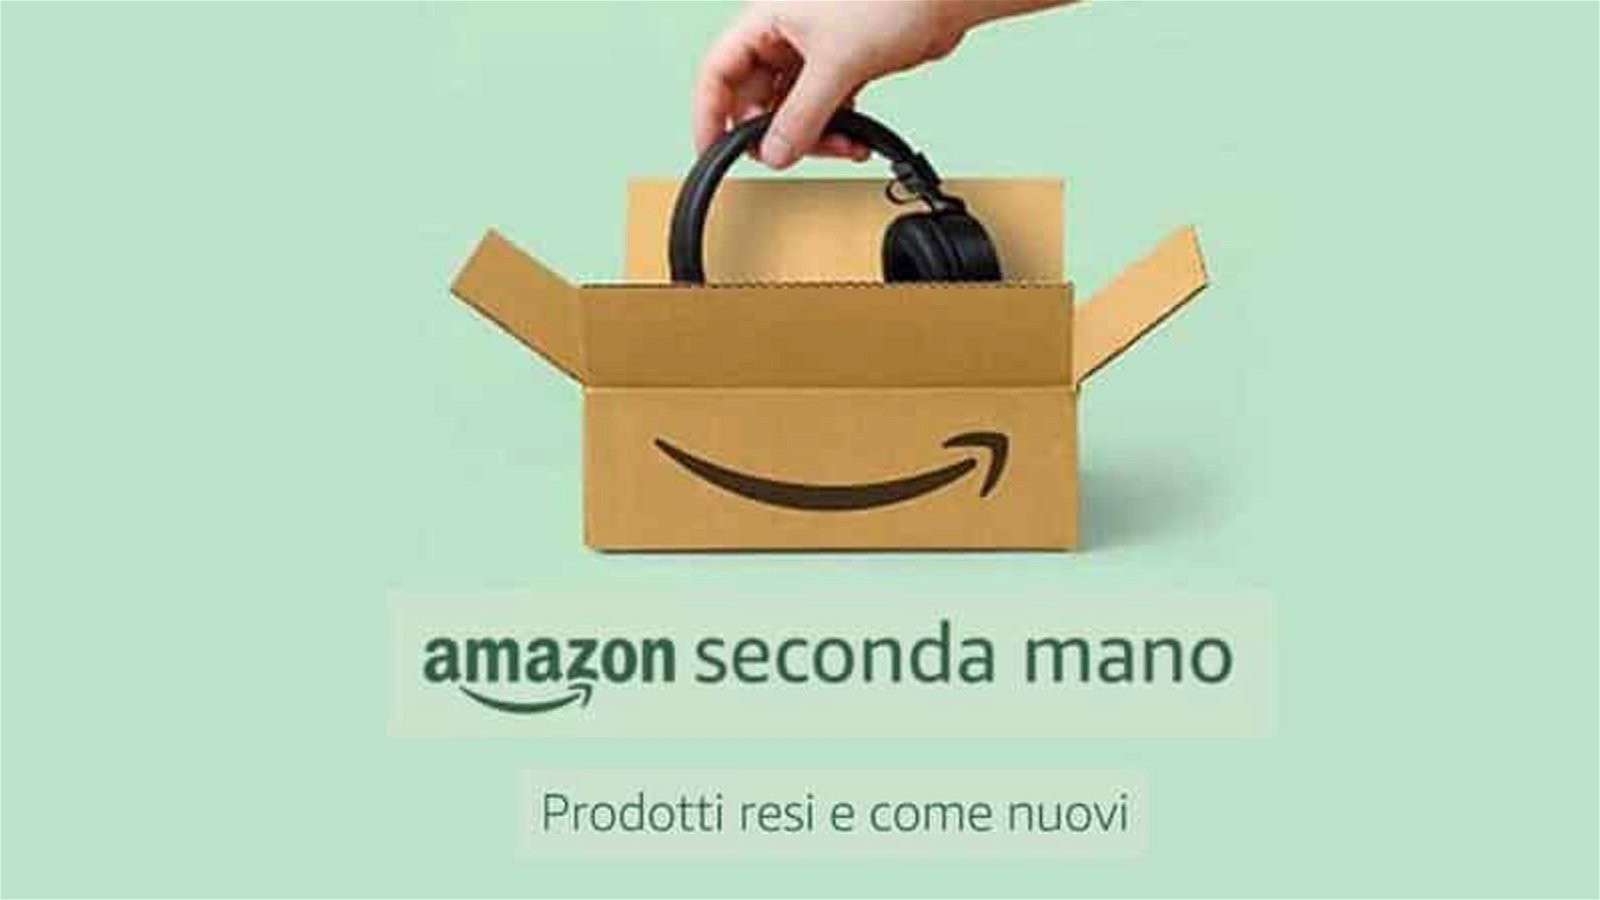 Immagine di Amazon Seconda Mano: da oggi sconti del 30% su migliaia di prodotti!